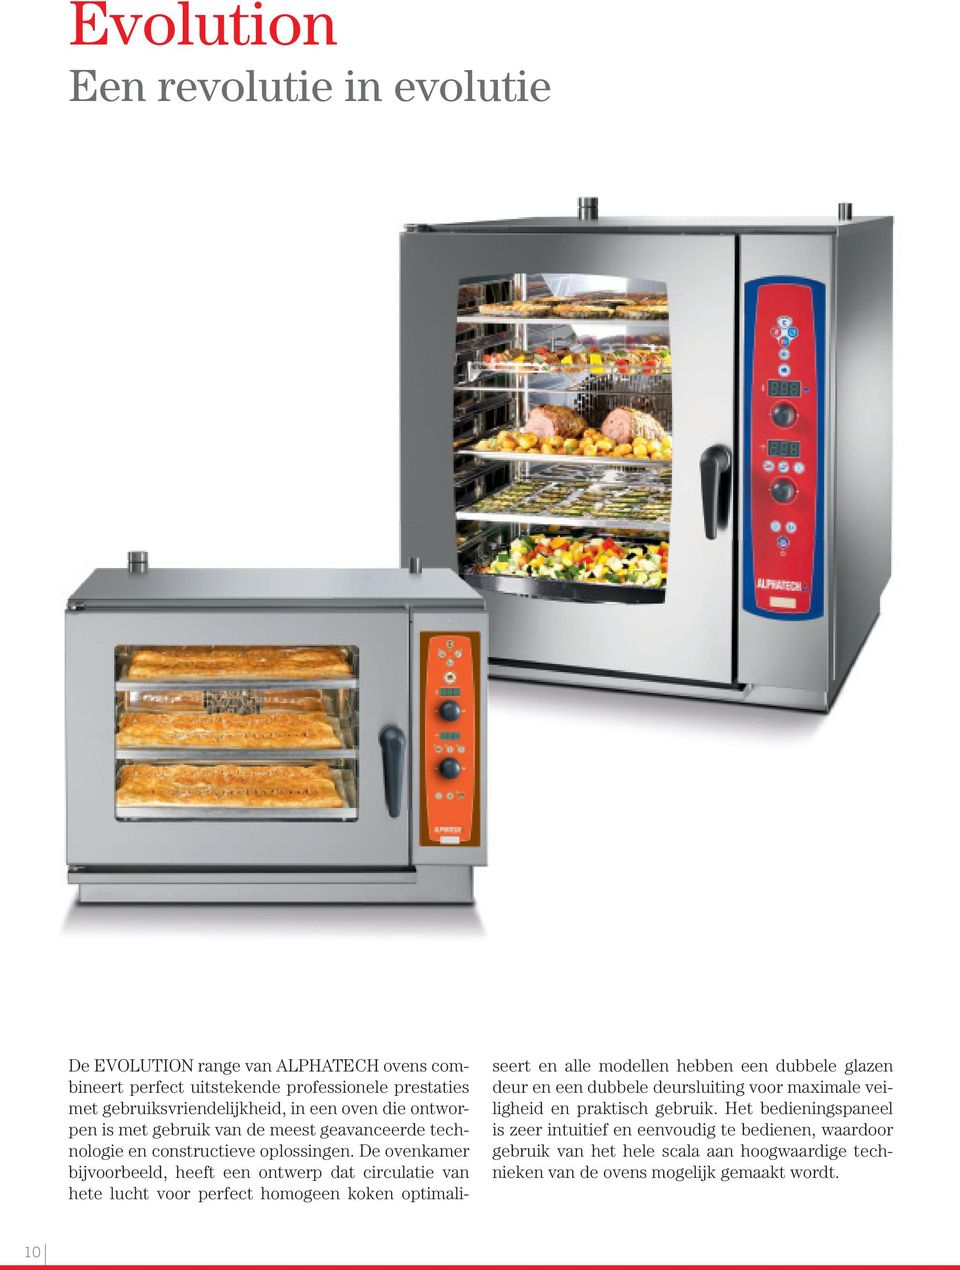 De ovenkamer bijvoorbeeld, heeft een ontwerp dat circulatie van hete lucht voor perfect homogeen koken optimaliseert en alle modellen hebben een dubbele glazen deur en